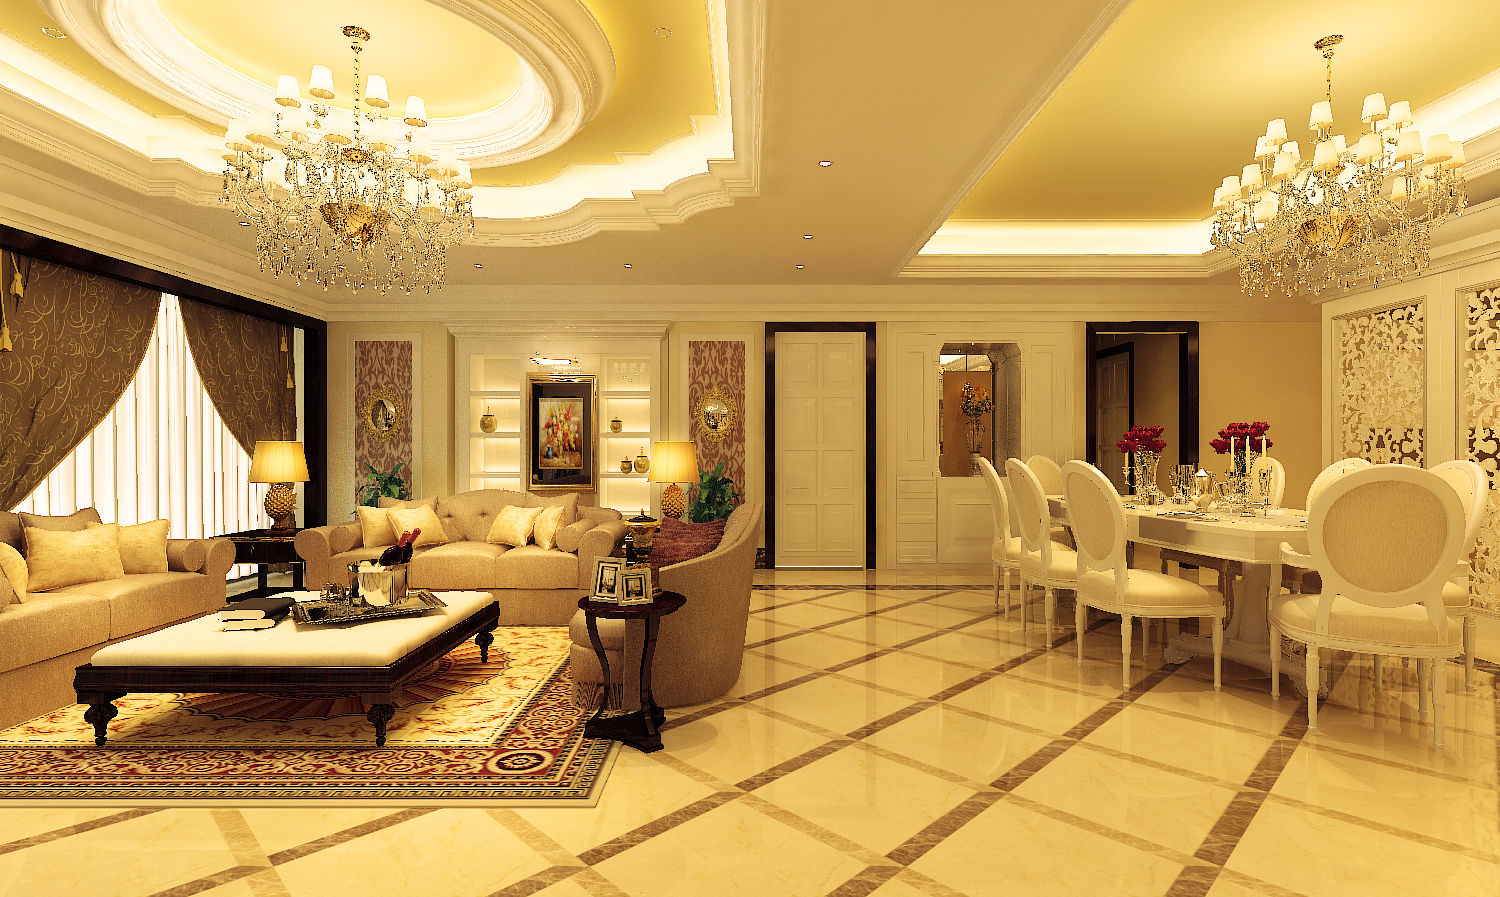 Tại năm 2024, thiết kế nội thất khách sạn sang trọng vẫn là một xu hướng được săn đón nhiều nhất. Với các chi tiết độc đáo và tinh tế, thiết kế nội thất khách sạn sang trọng sẽ mang đến cho khách hàng những trải nghiệm phong phú, đẳng cấp và đầy ấn tượng. Hãy truy cập ngay để khám phá thiết kế nội thất của các khách sạn sang trọng trong năm